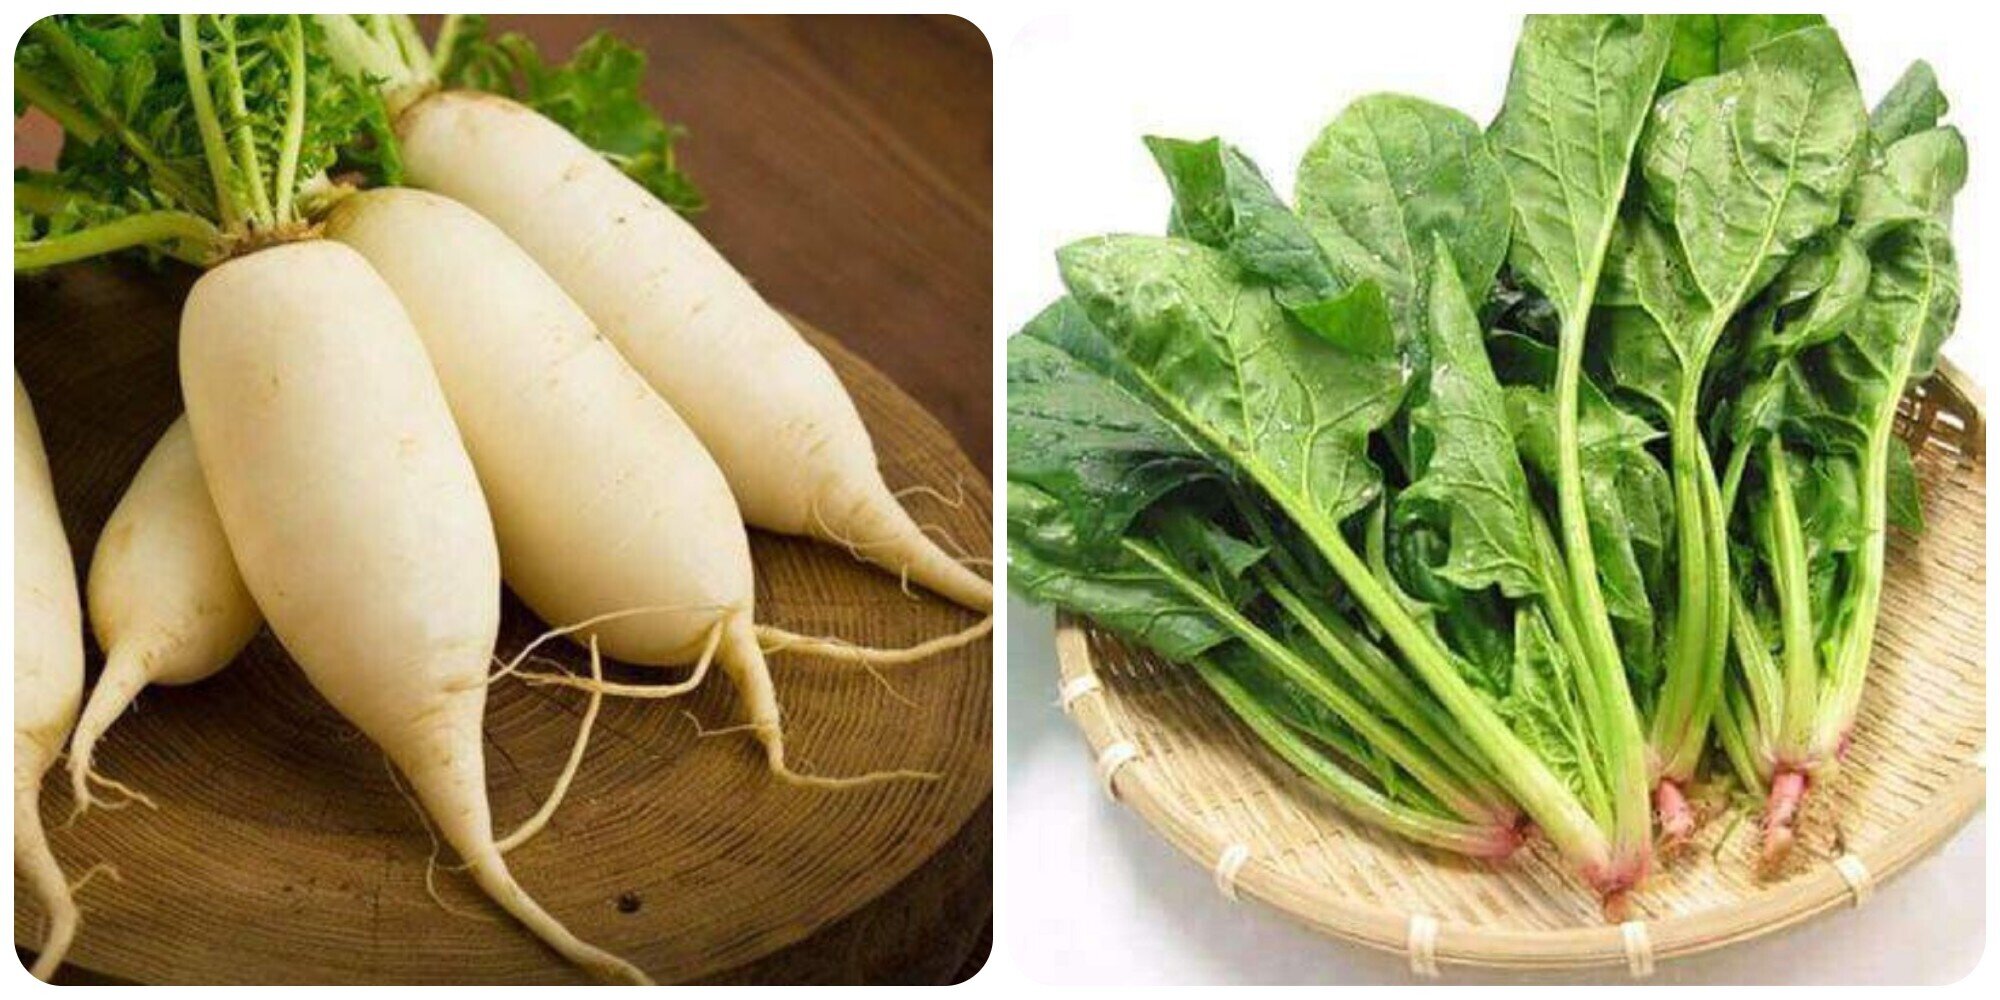 Củ cải trắng và cải bó xôi rất tốt cho sức khoẻ.